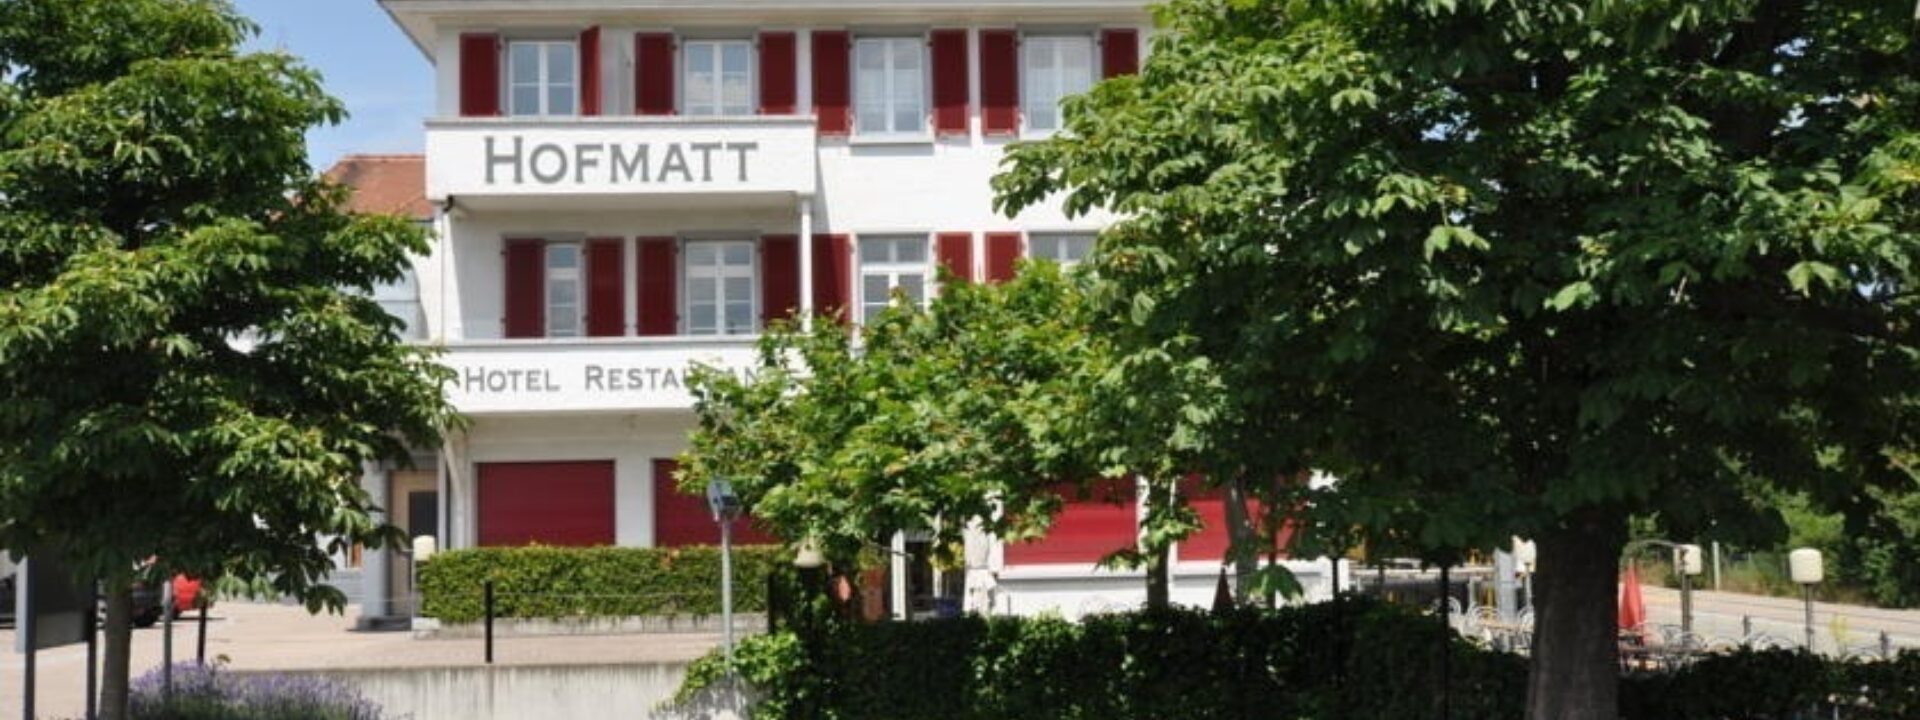 Restaurant Hofmatt